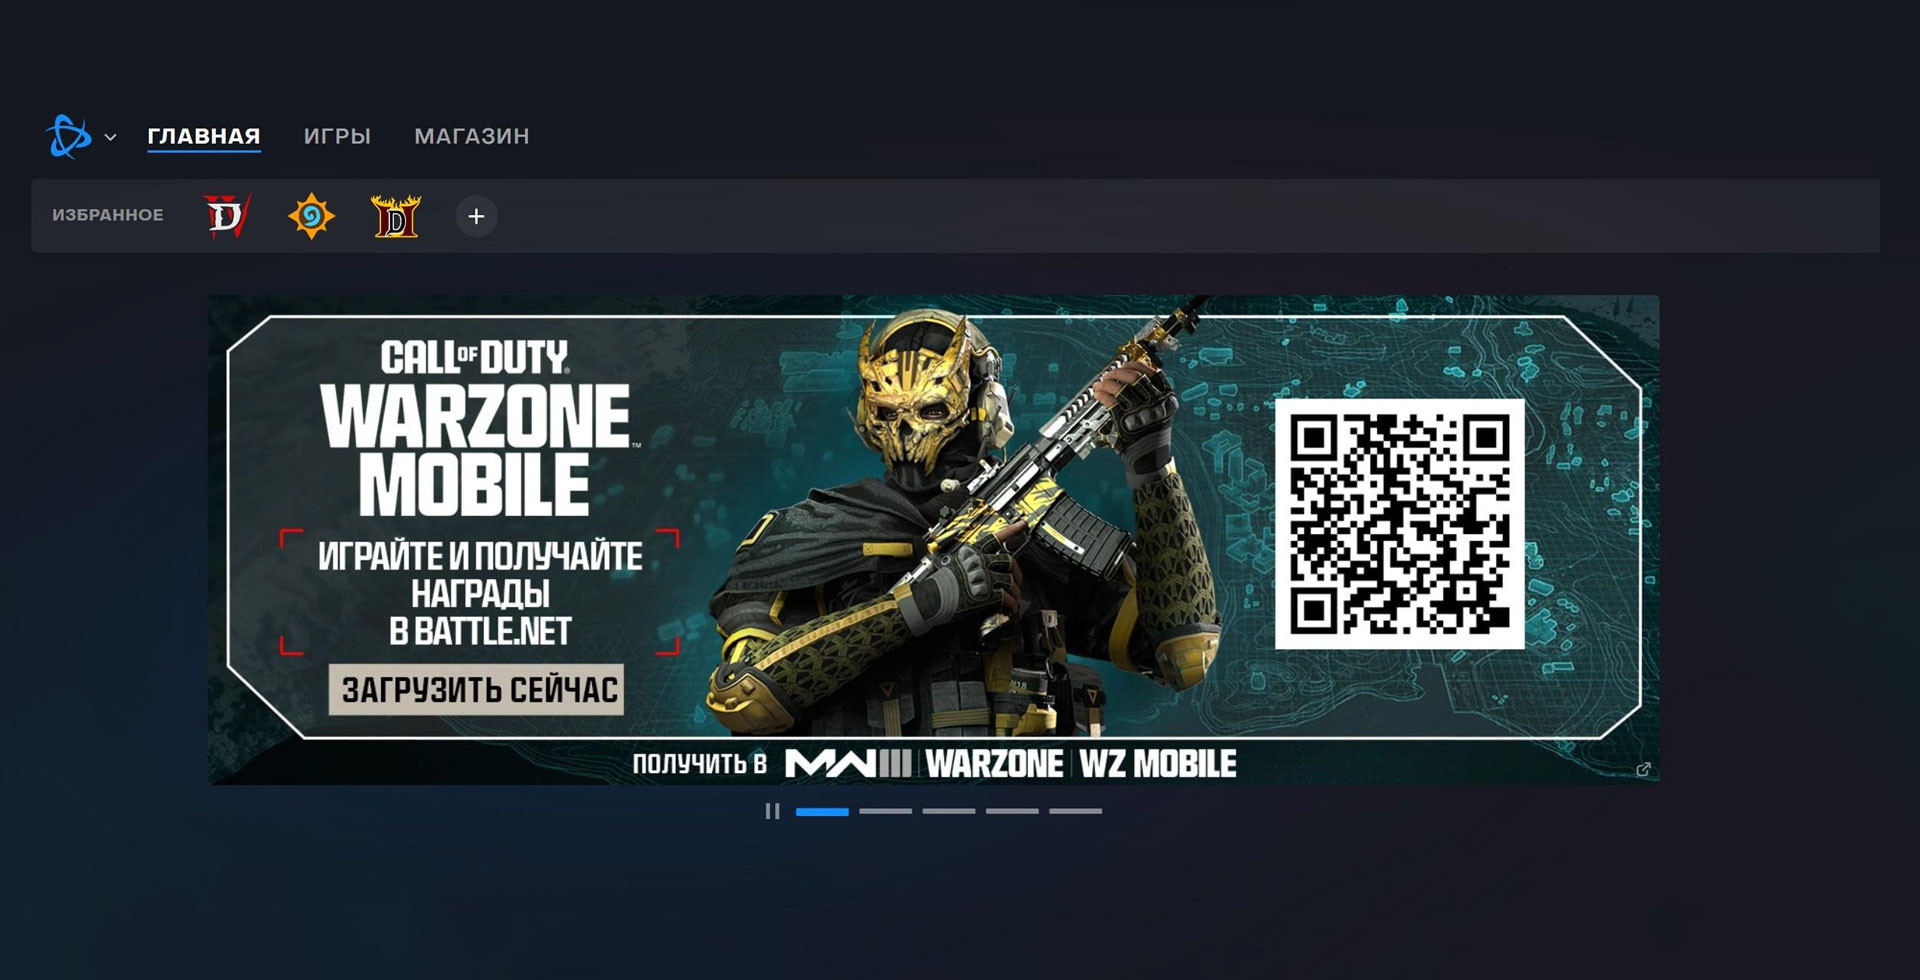 Как играть и где скачать Call of Duty: Warzone Mobile в России?